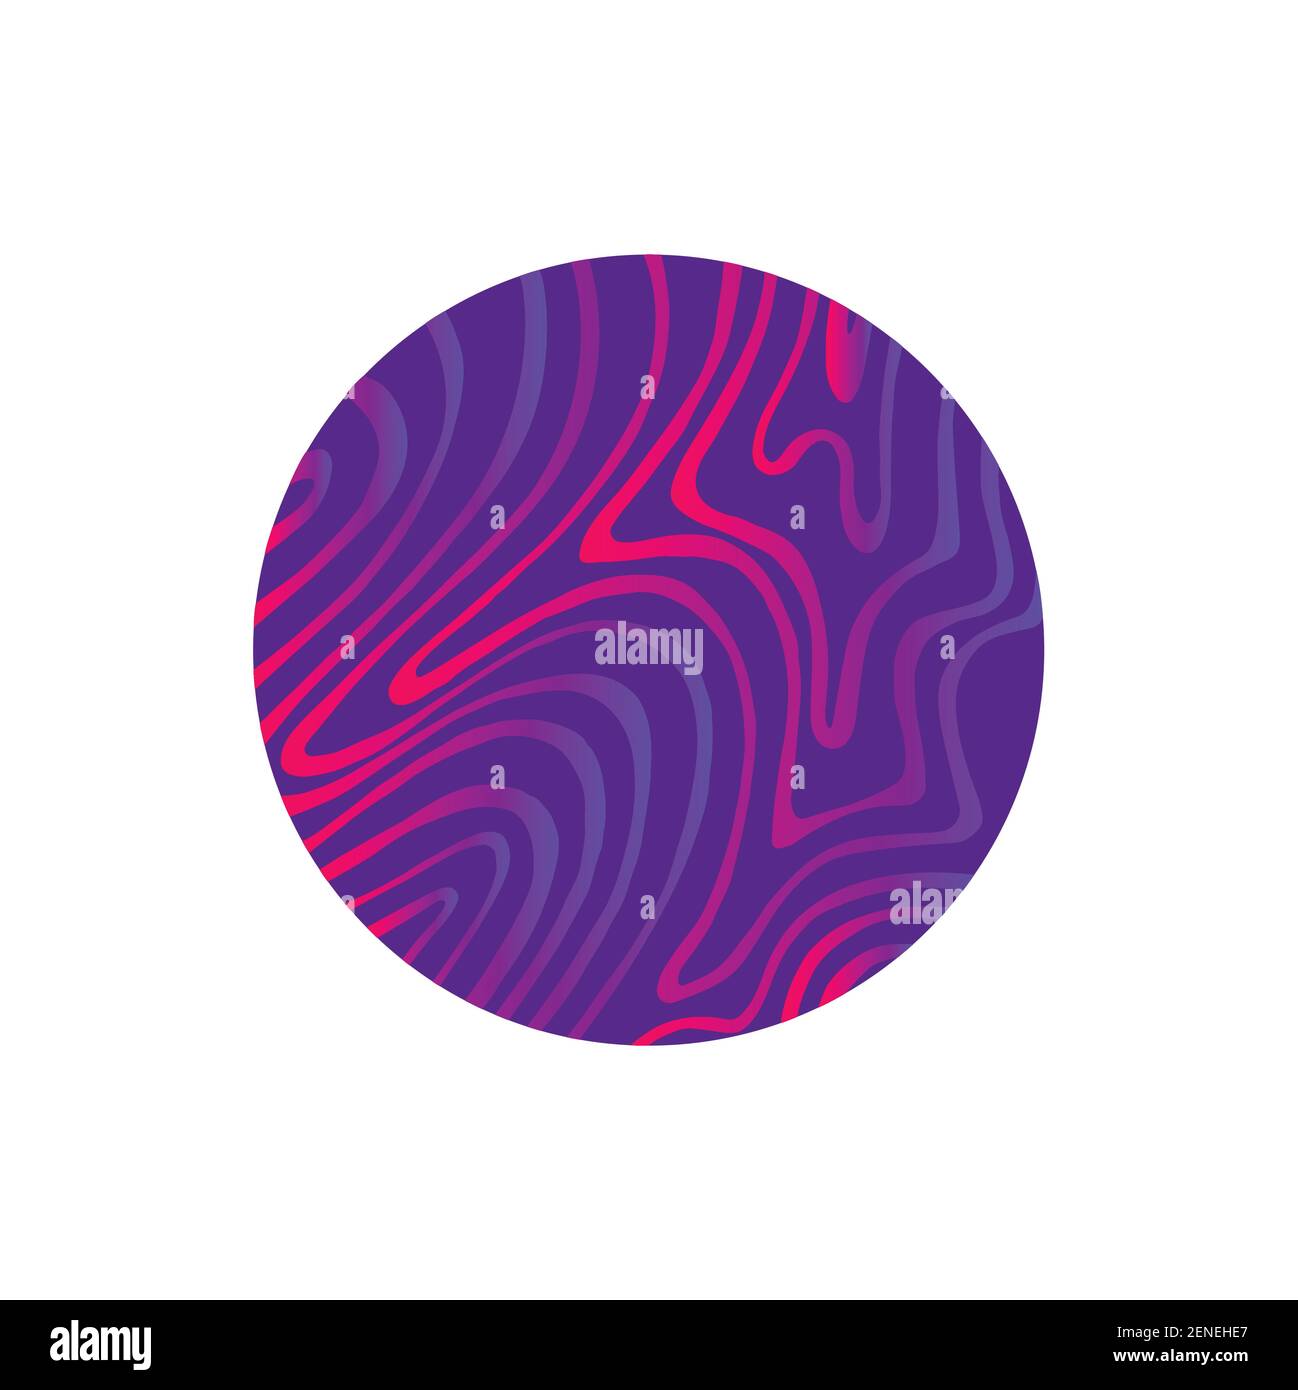 Cerchio viola astratto con linee luminose sfumatura colore rosa-lilla neon, isolato su sfondo bianco. Elemento decorativo vettoriale per la progettazione. Illustrazione Vettoriale